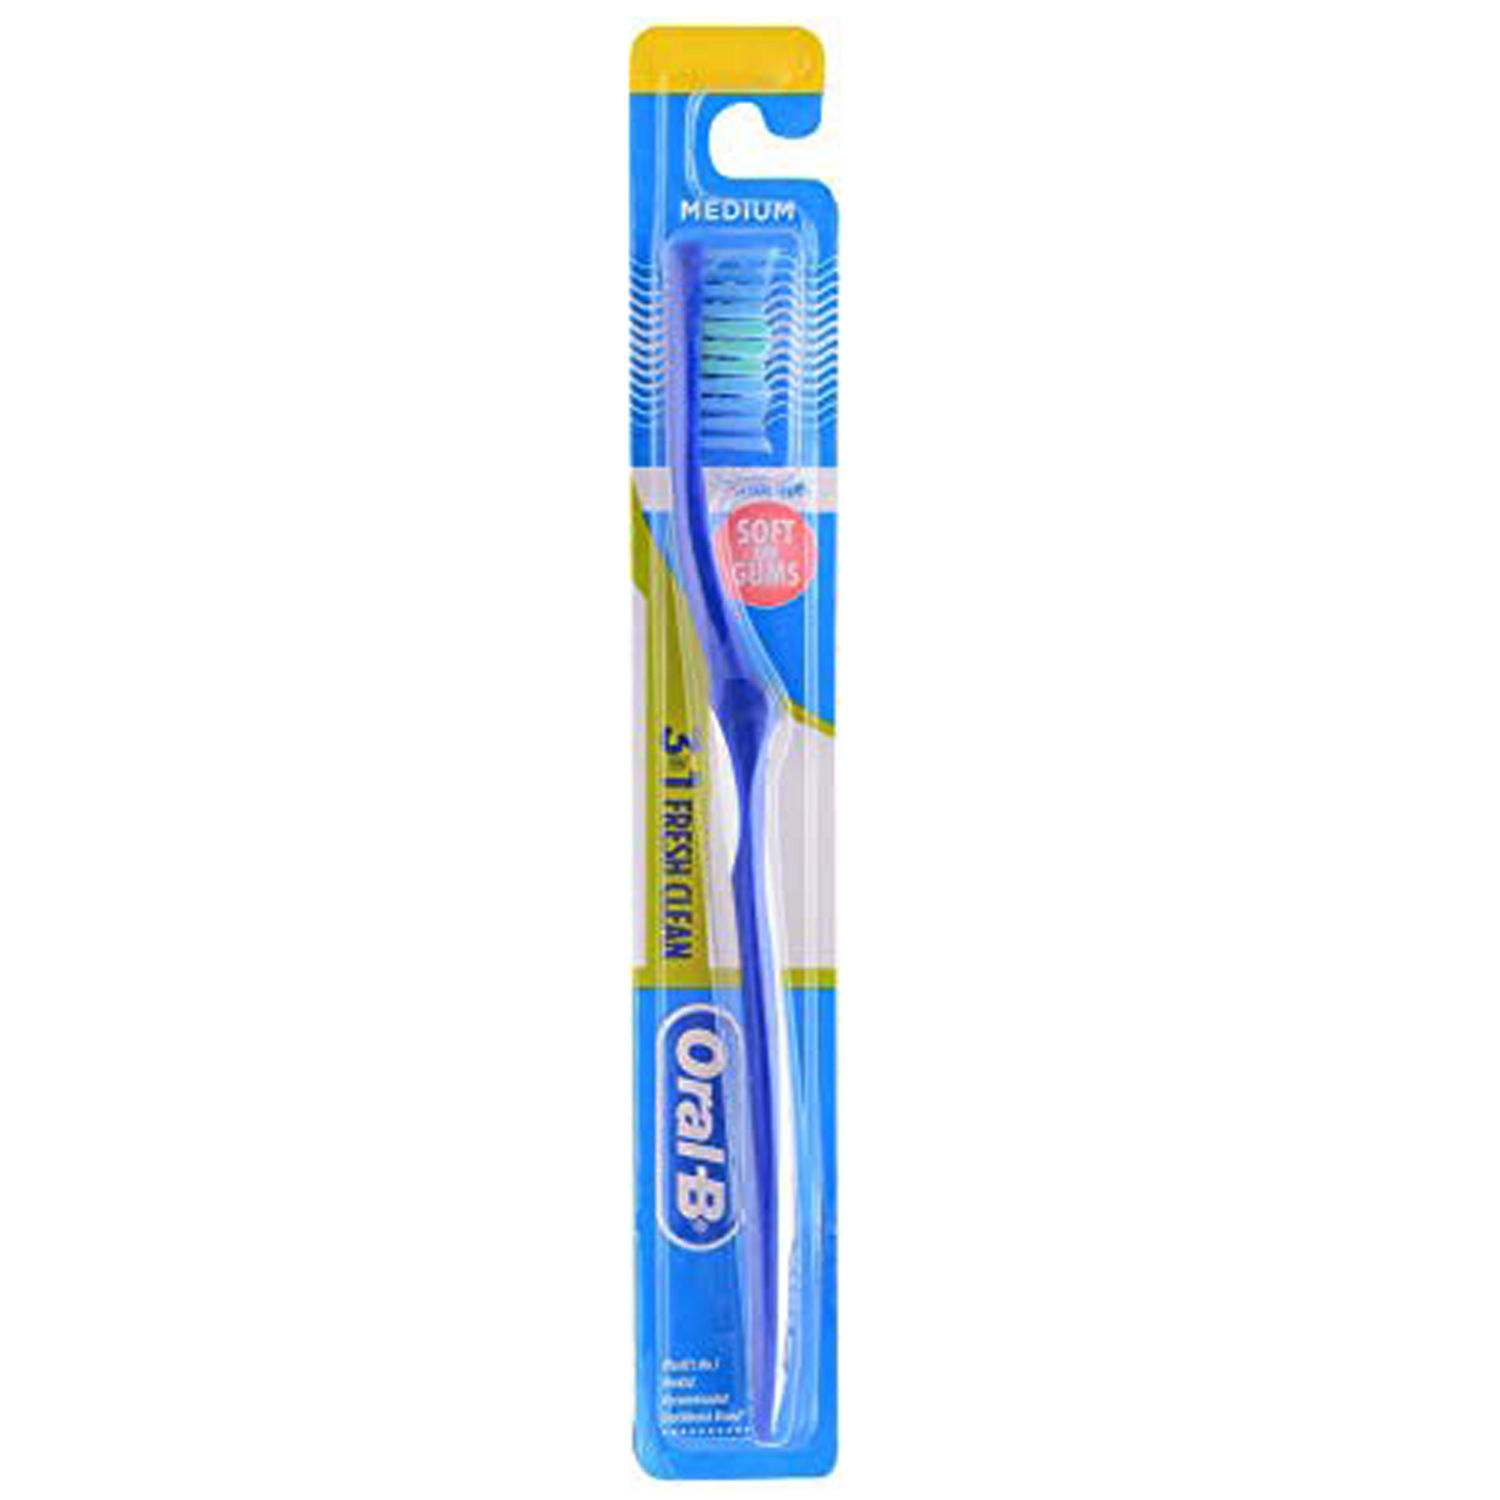 Buy Oral-B 3-in-1 Fresh clean Toothbrush Medium, 1 Count Online